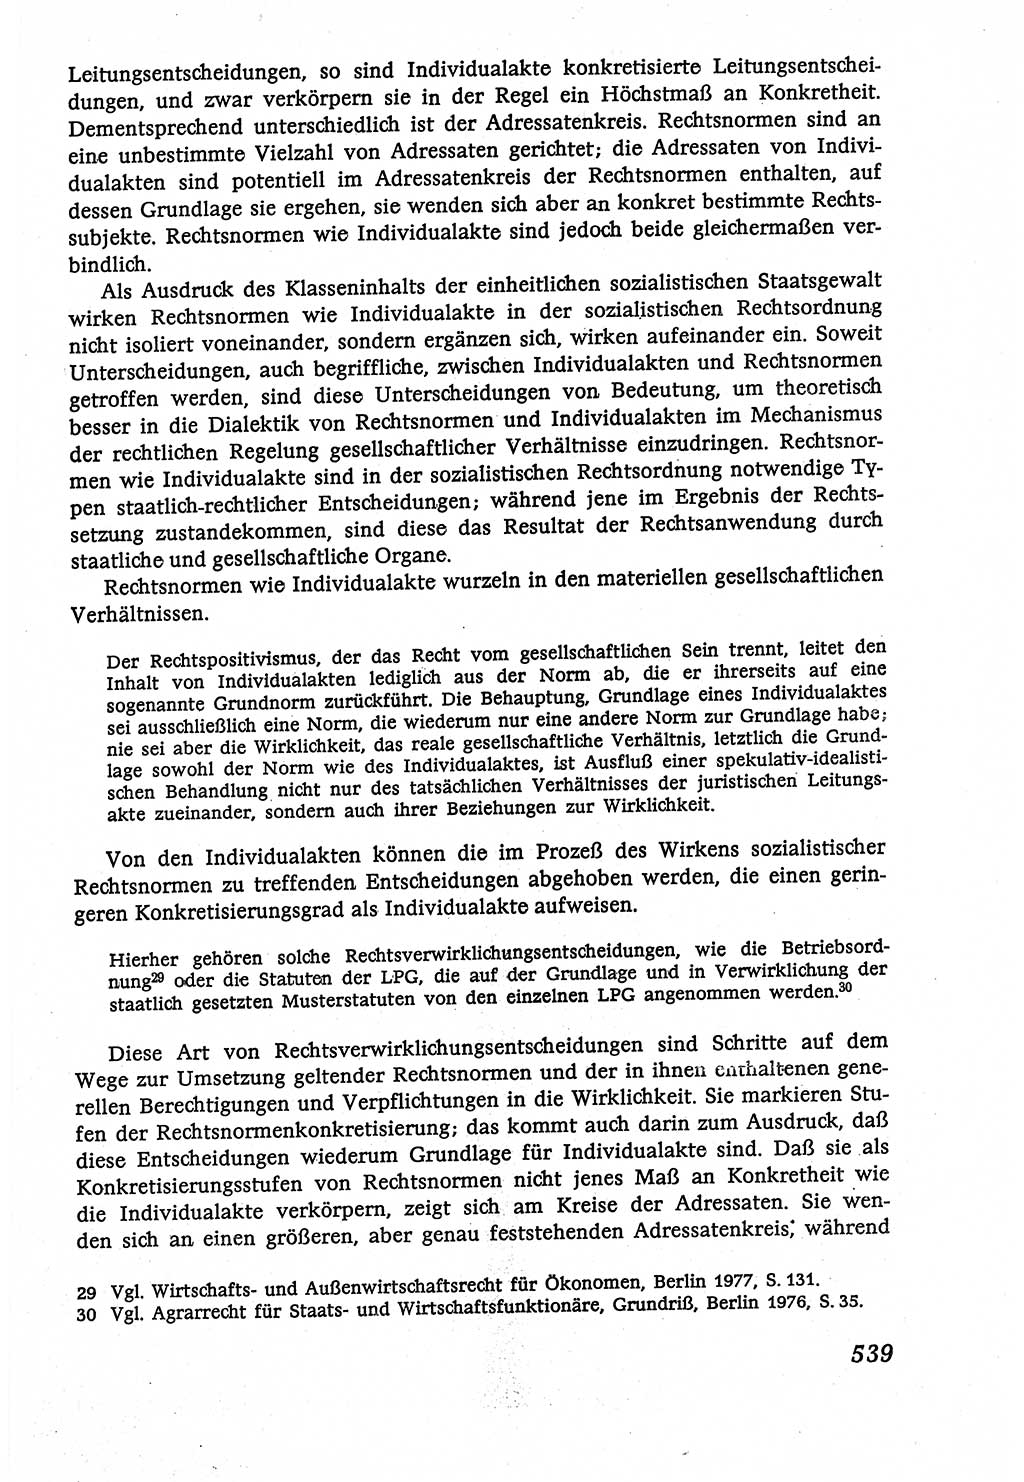 Marxistisch-leninistische (ML) Staats- und Rechtstheorie [Deutsche Demokratische Republik (DDR)], Lehrbuch 1980, Seite 539 (ML St.-R.-Th. DDR Lb. 1980, S. 539)